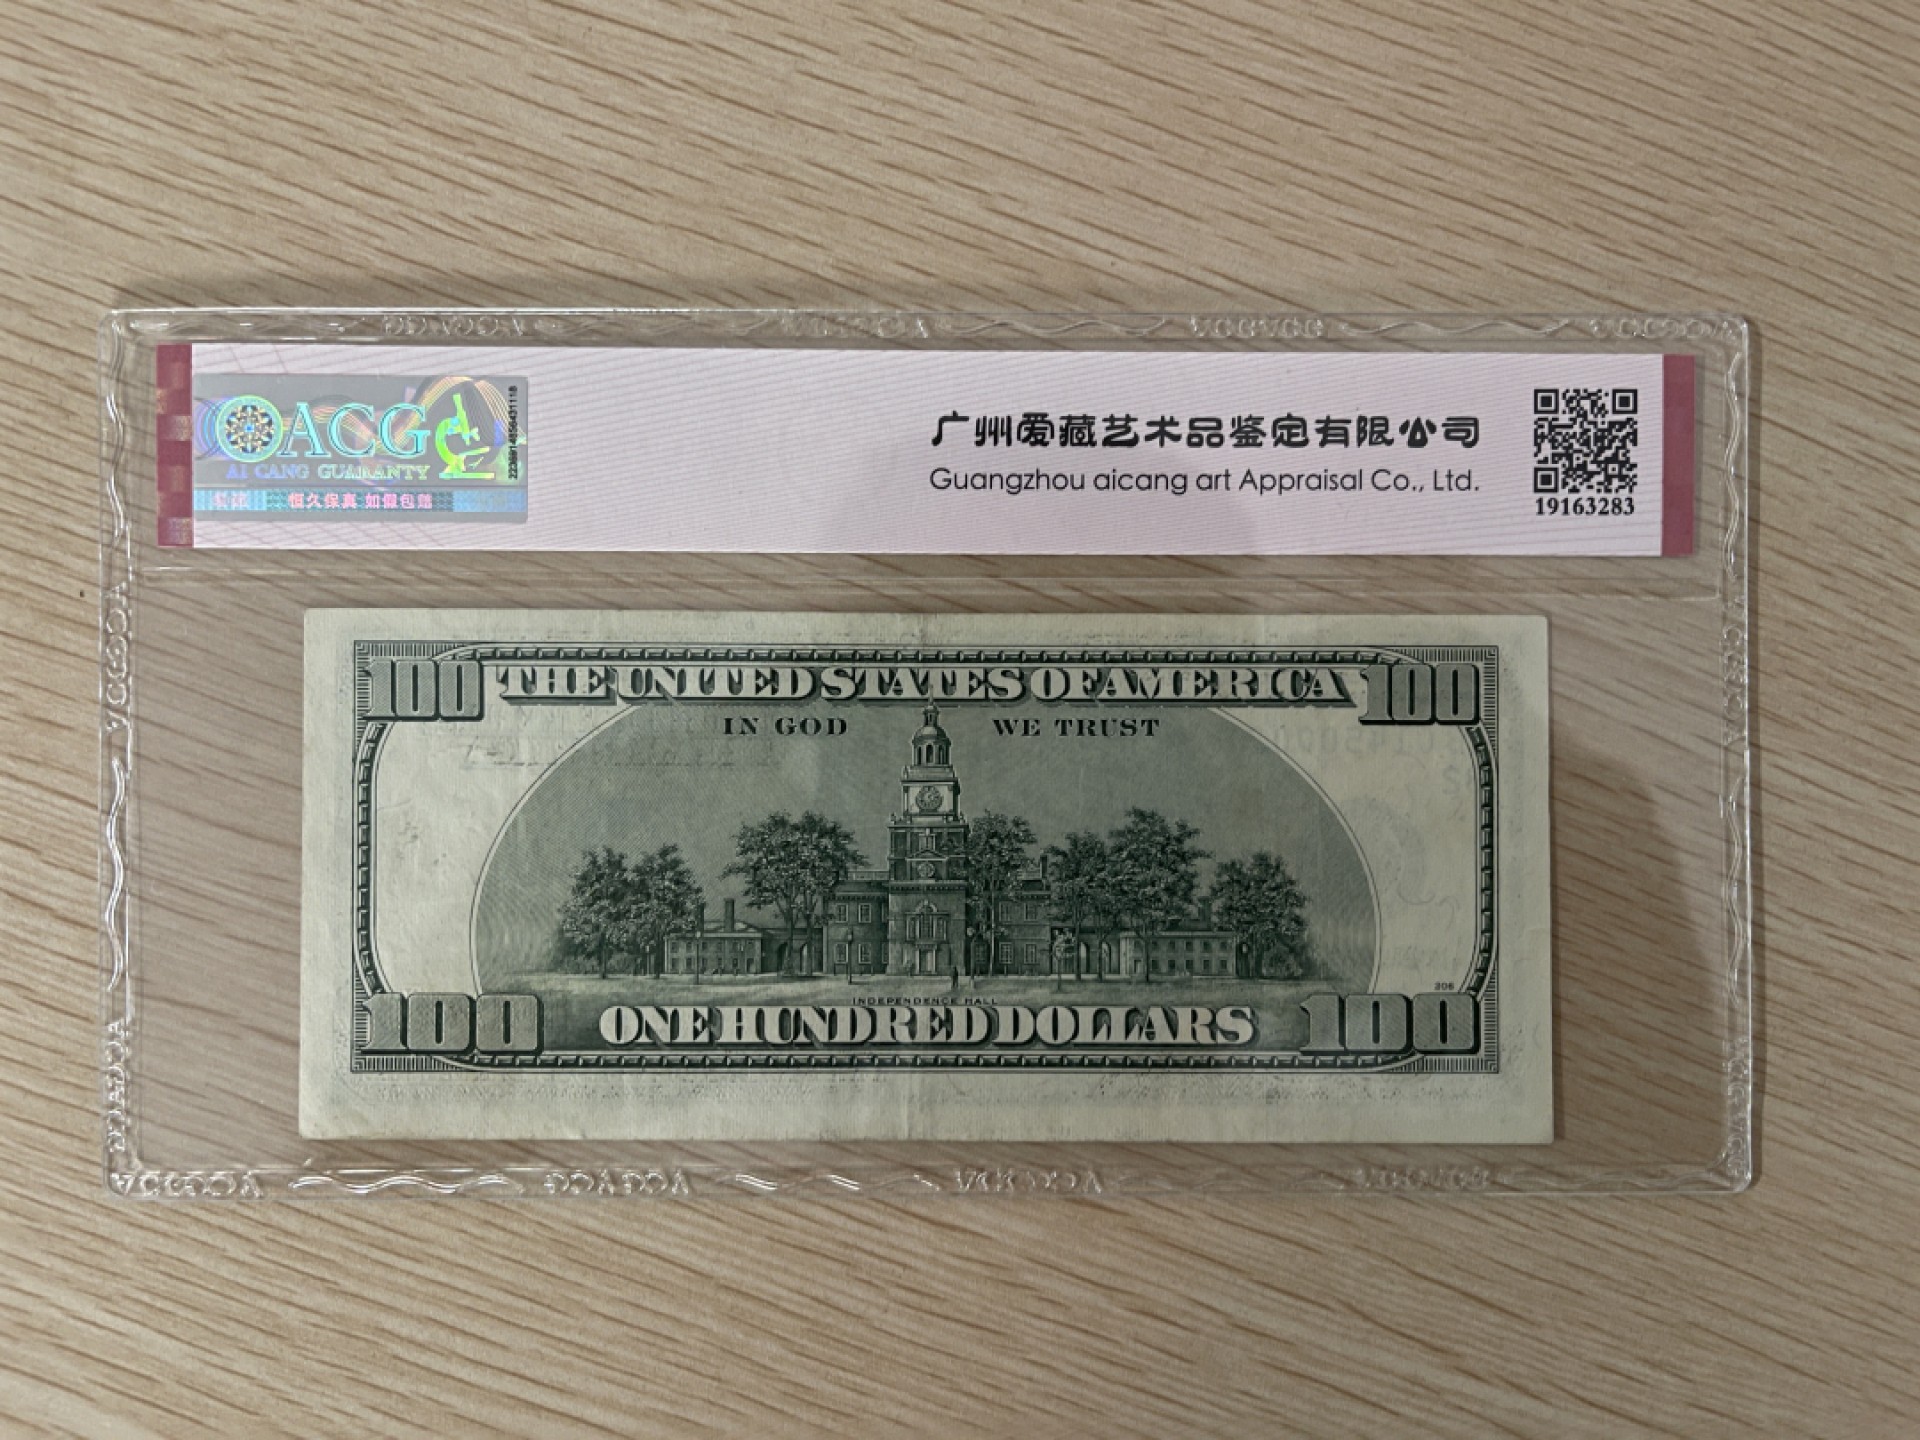 美国纸币美联储1996年100美元黑白大头版- oc34ngu1 - oc34ngu1 - 麦稀奇